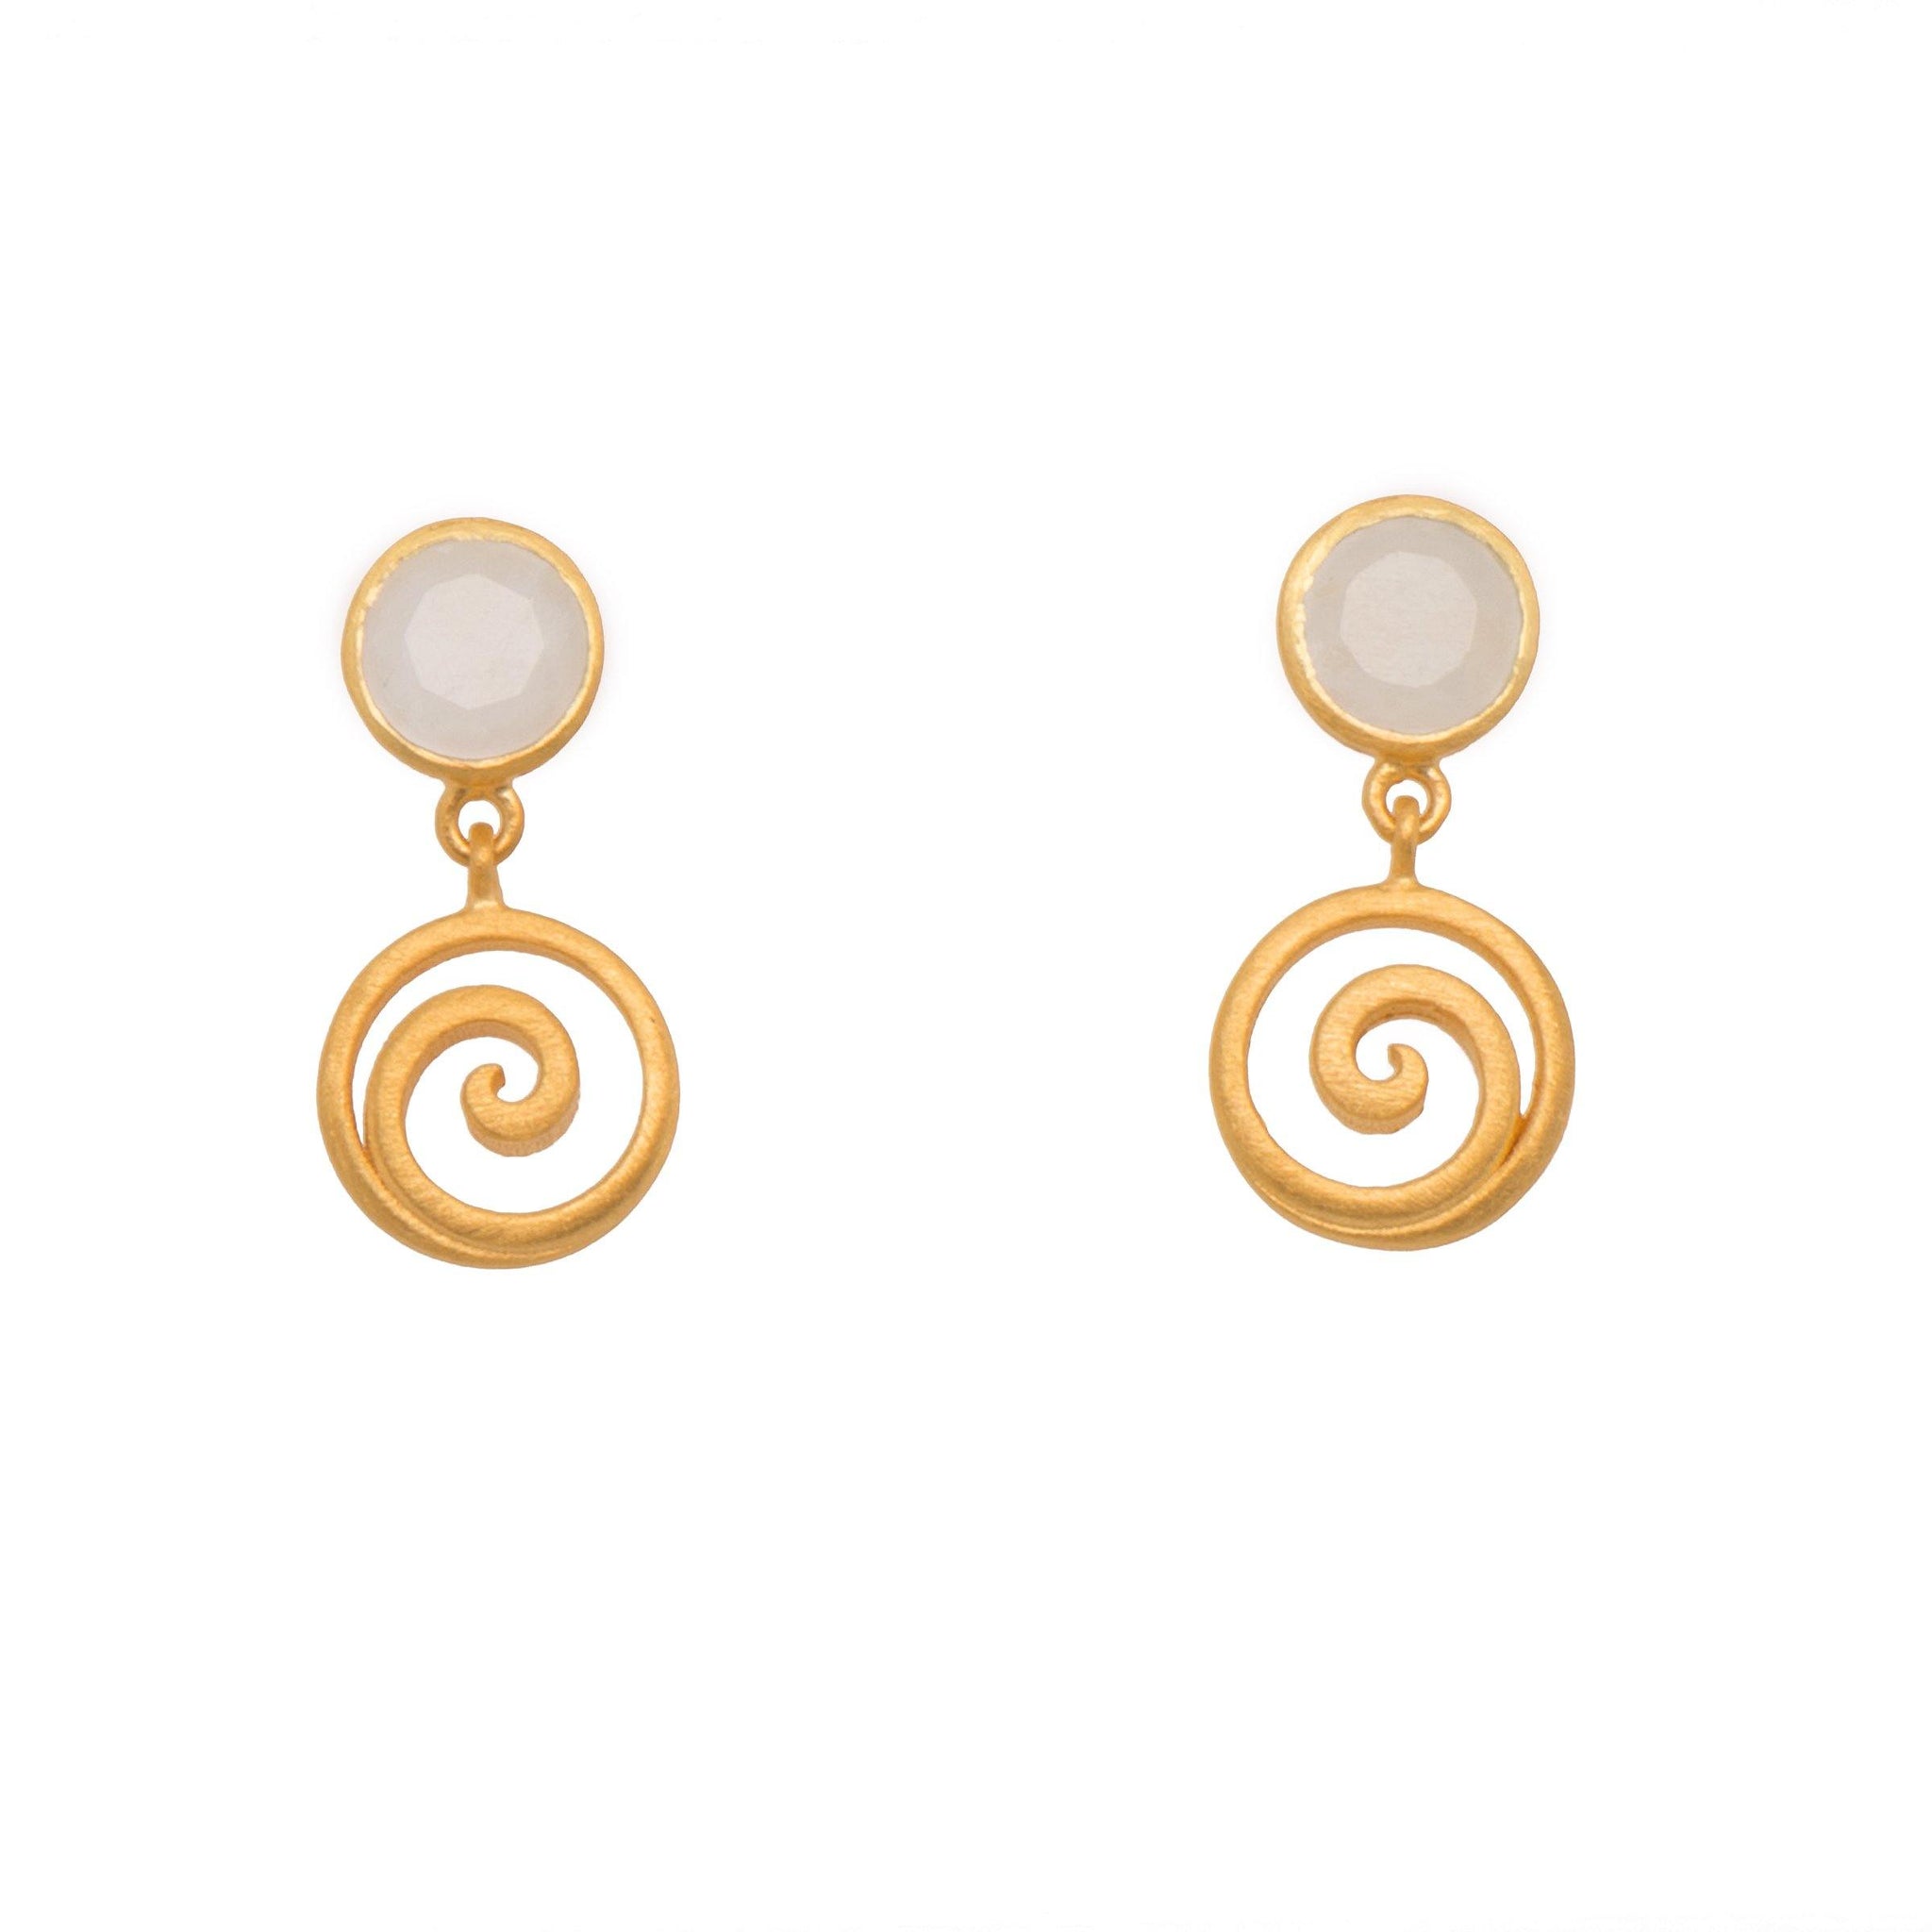 GRATITUDE SWIRL RAINBOW MOONSTONE EARRINGS 24K GOLD VERMEIL - Joyla Jewelry